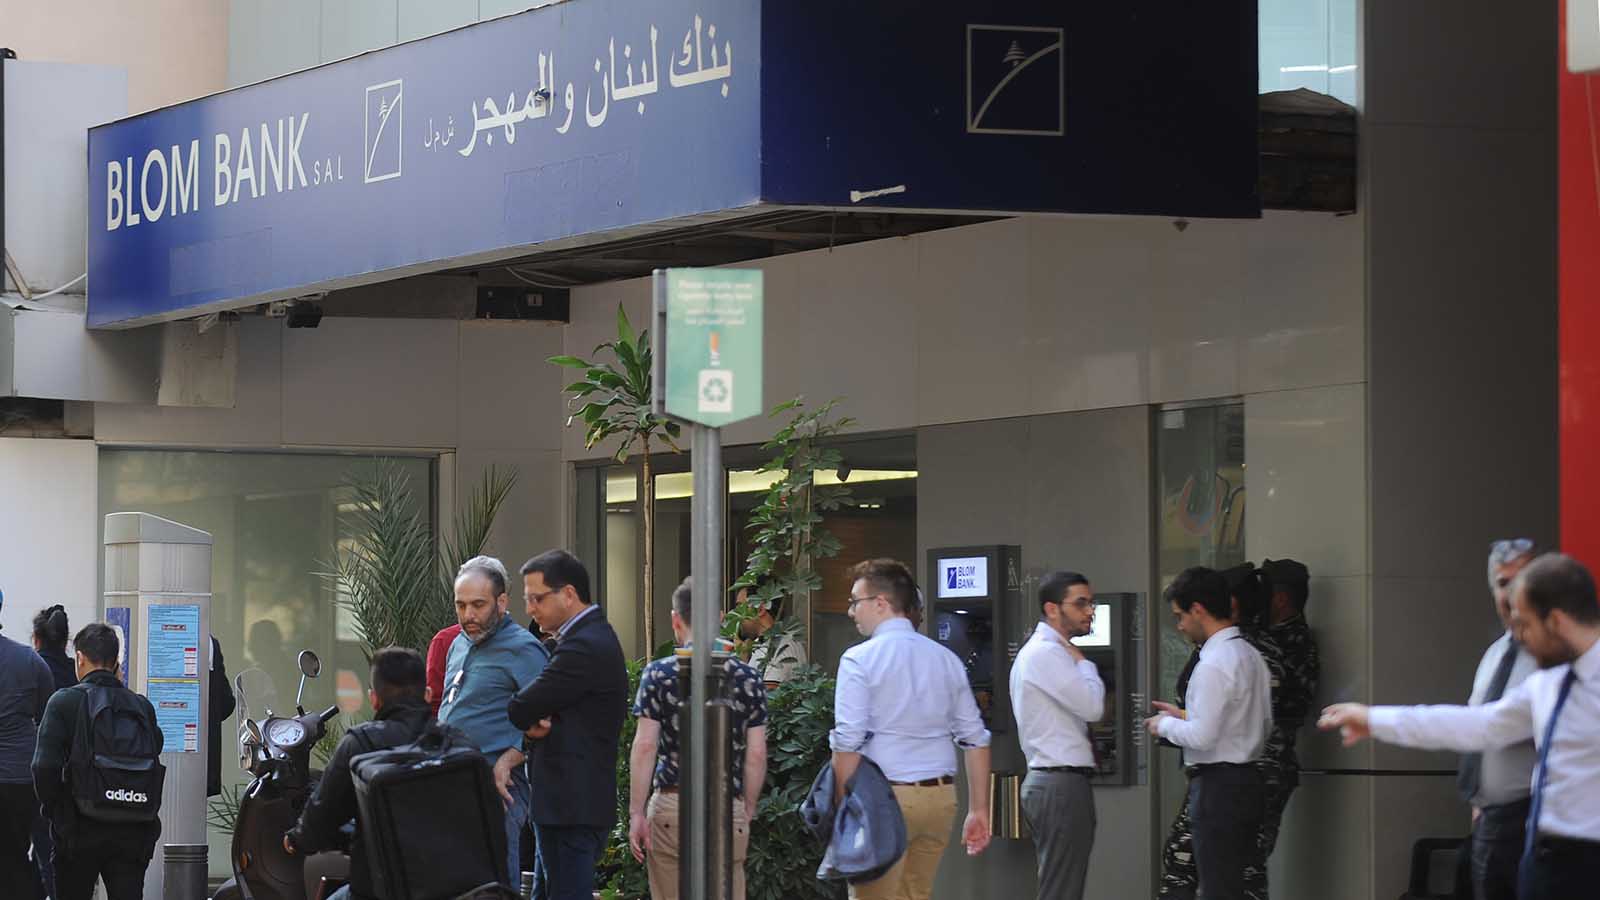 غداً الاثنين.. المصارف اللبنانية تعيد فتح أبوابها بعد إغلاقها بسبب الاقتحامات